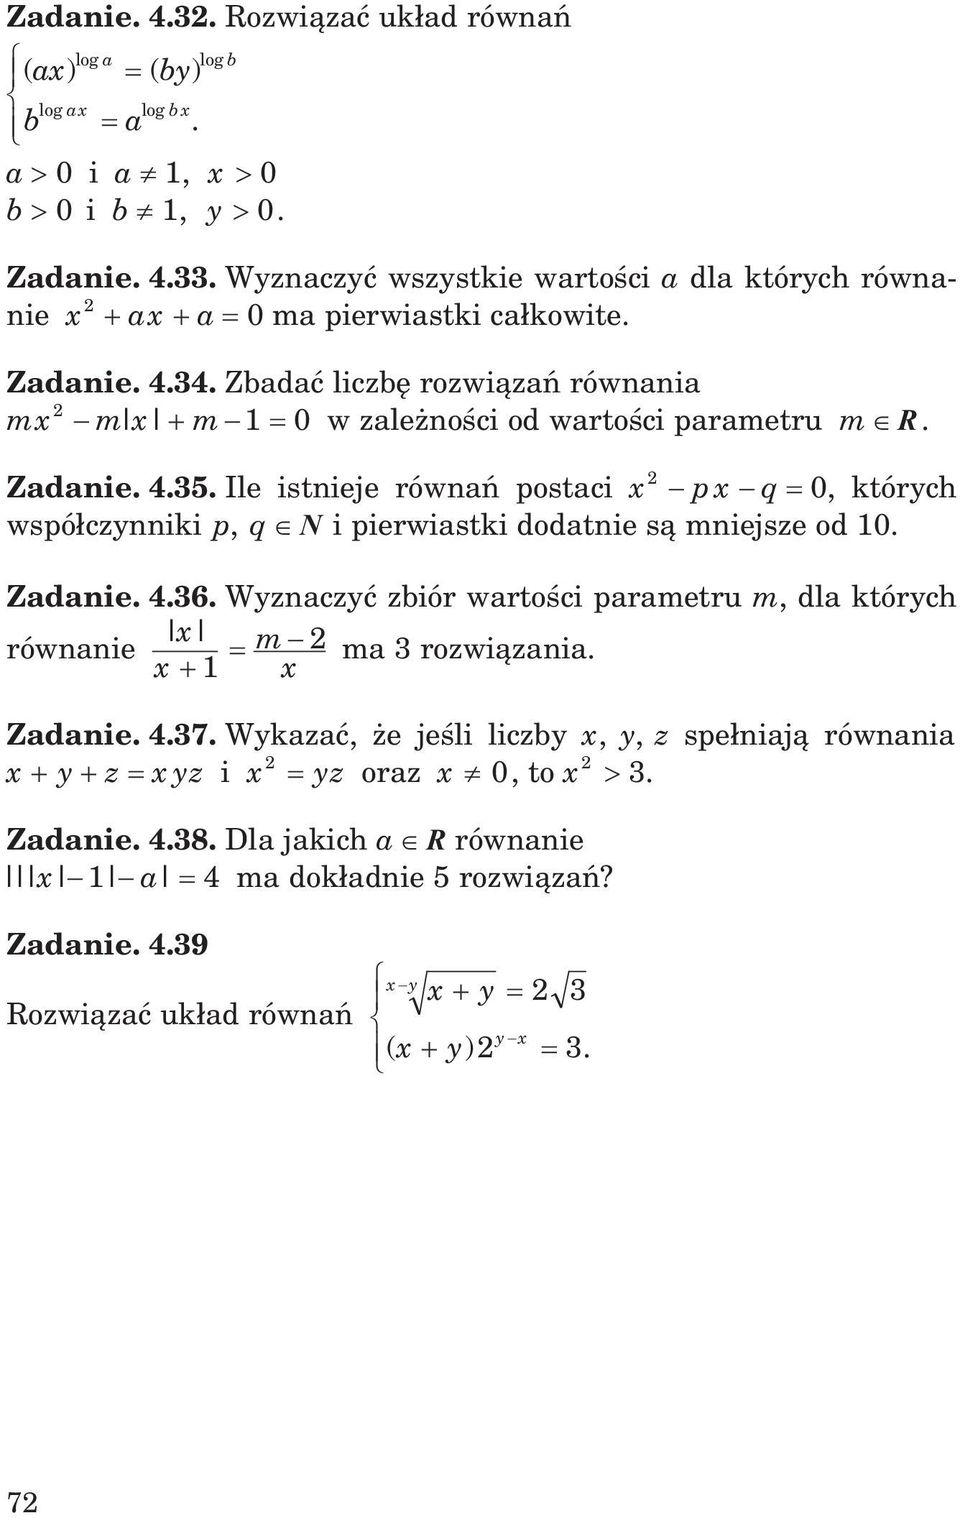 Zadanie. 4.35. Ile istnieje równañ postaci x p x q 0, których wspó³czynniki p, q N i pierwiastki dodatnie s¹ mniejsze od 10. Zadanie. 4.36.